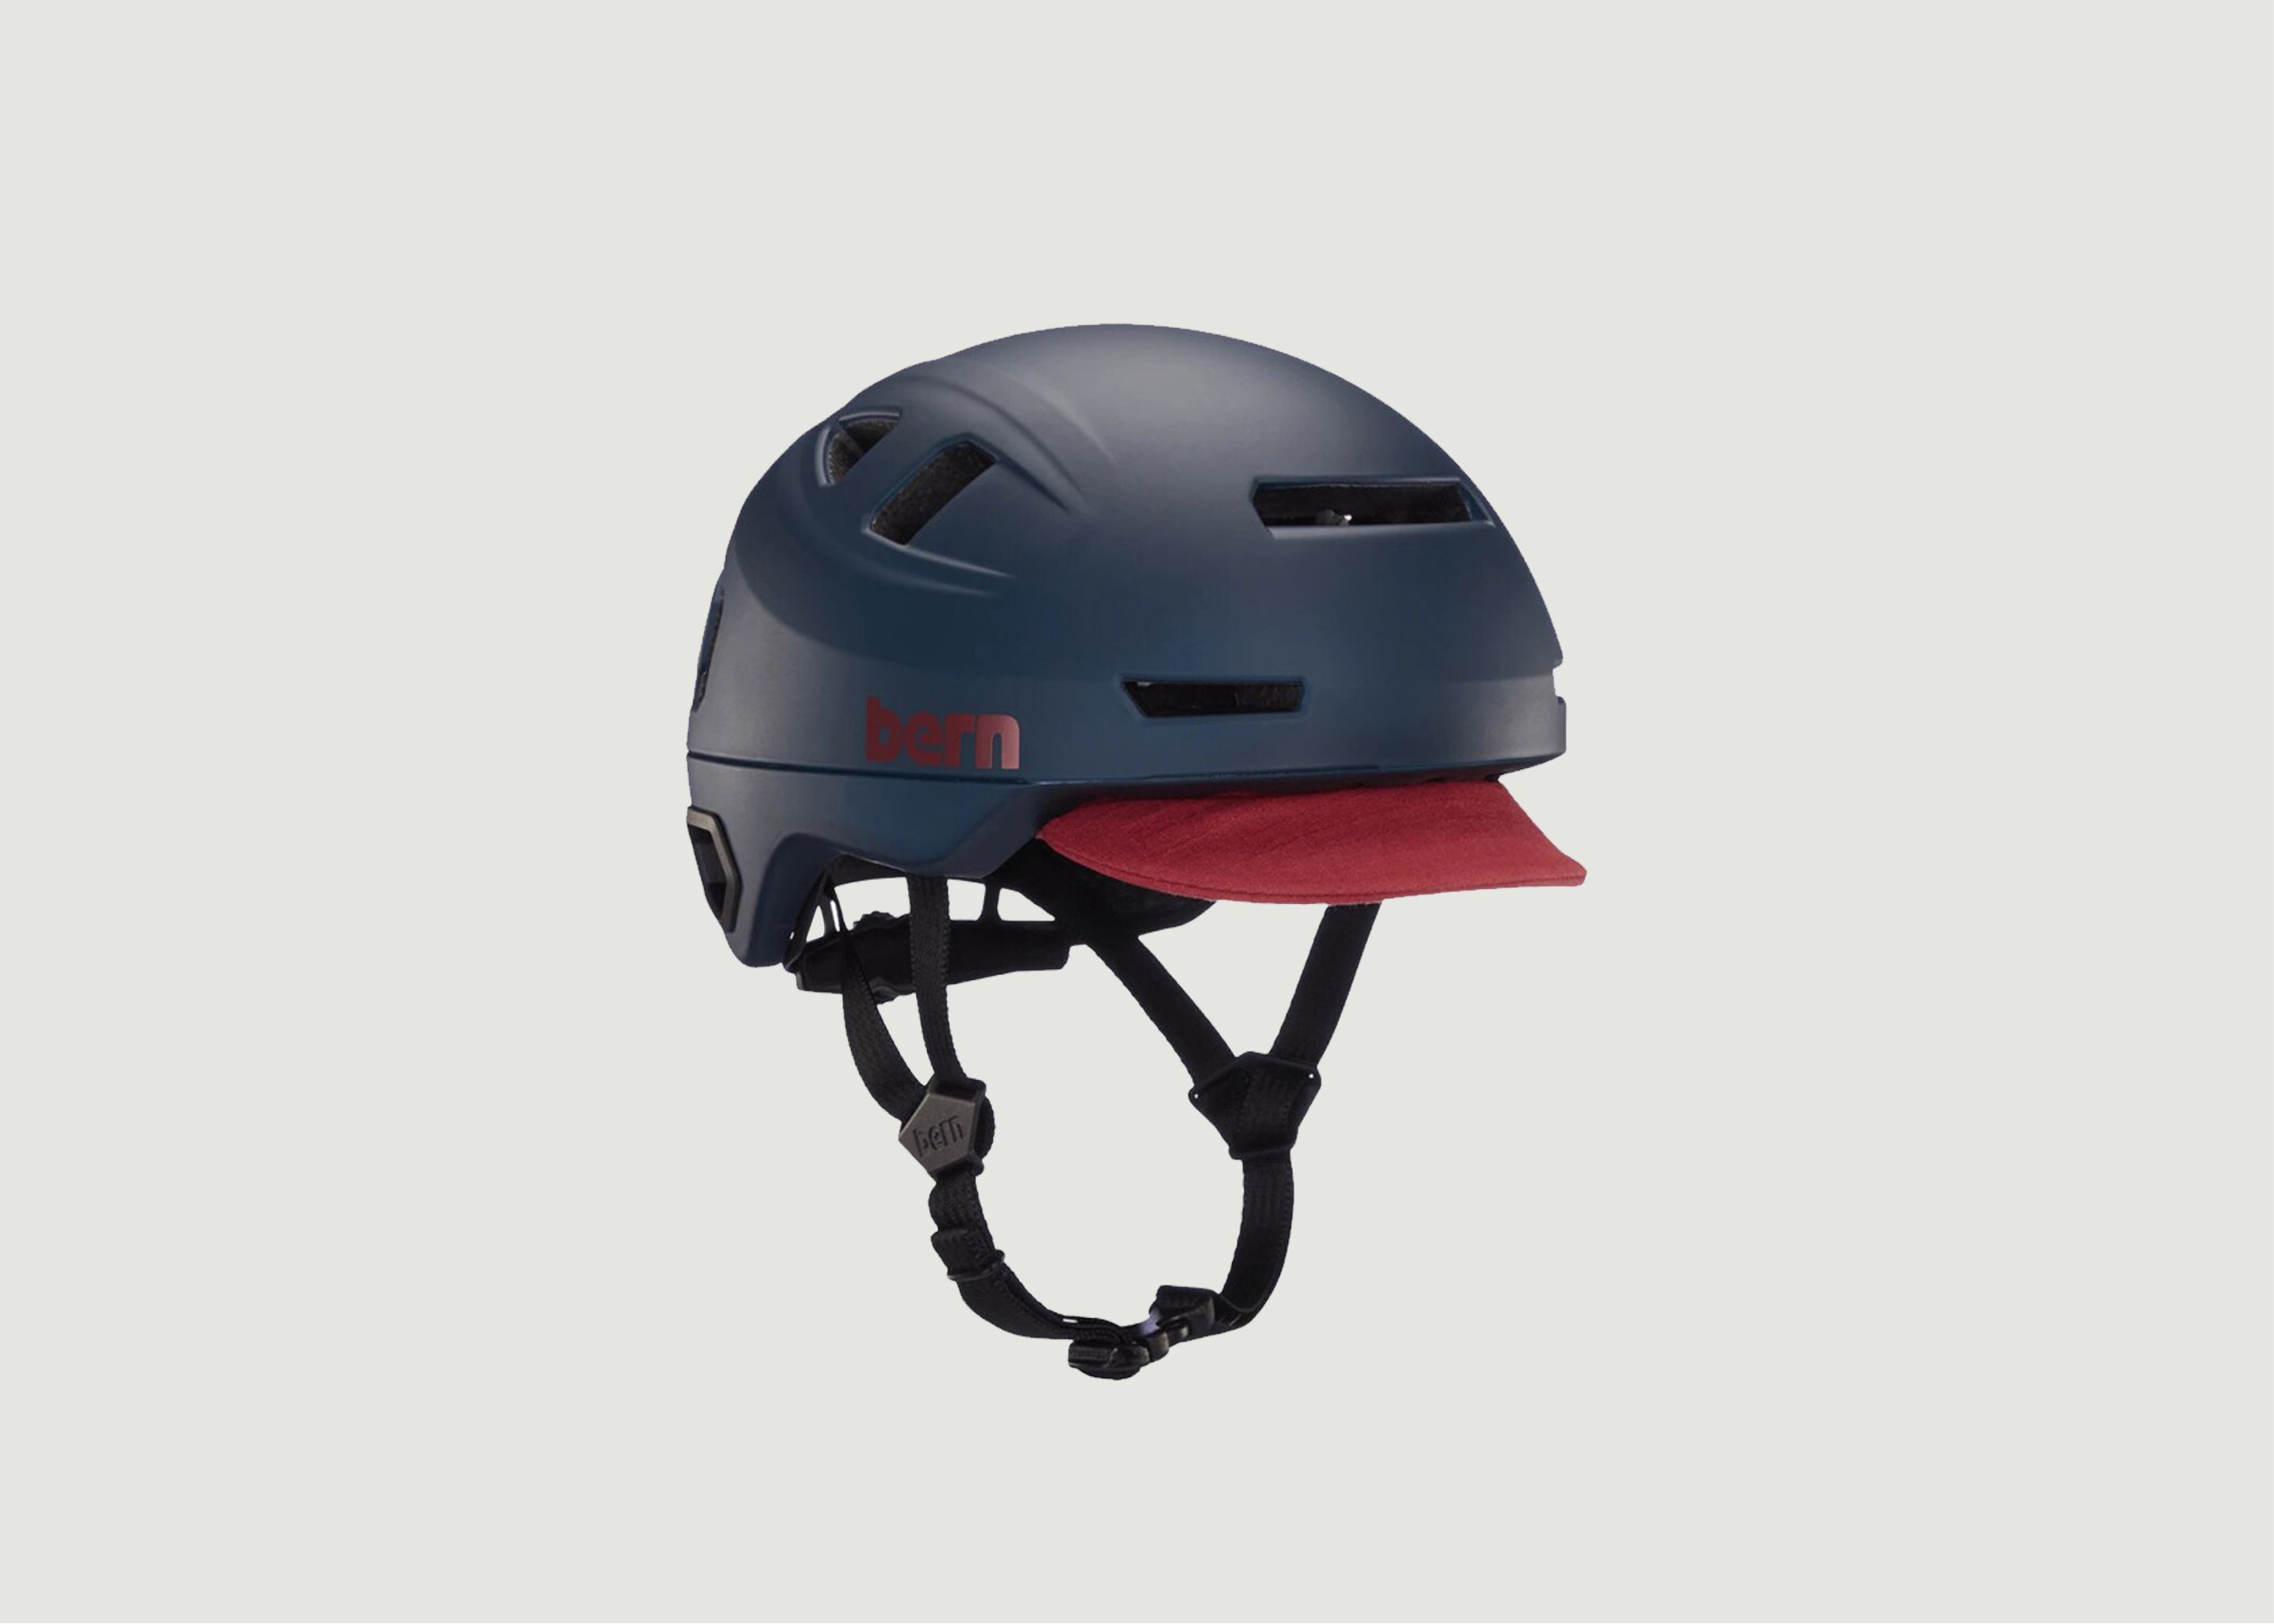 Hudson MIPS bike helmet - Bern